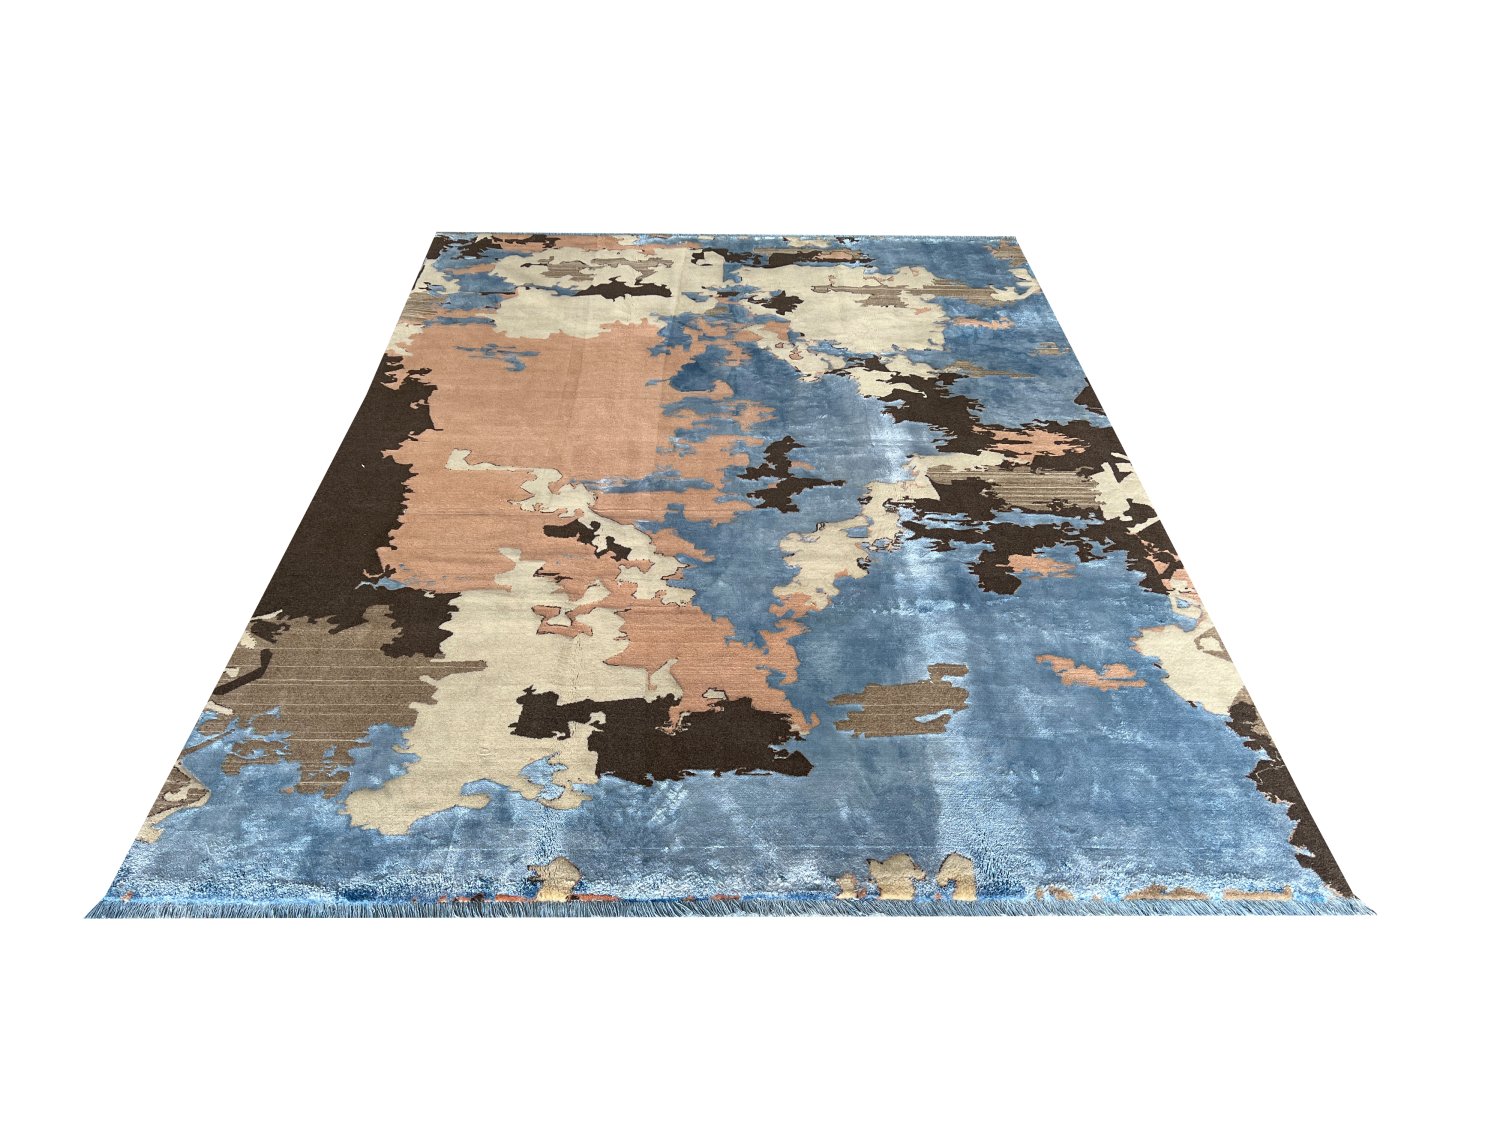 فرش پشمی ماشینی طبیعی و ارگانیک کد 0037 - زمینه آبی کم رنگ - حاشیه کرم